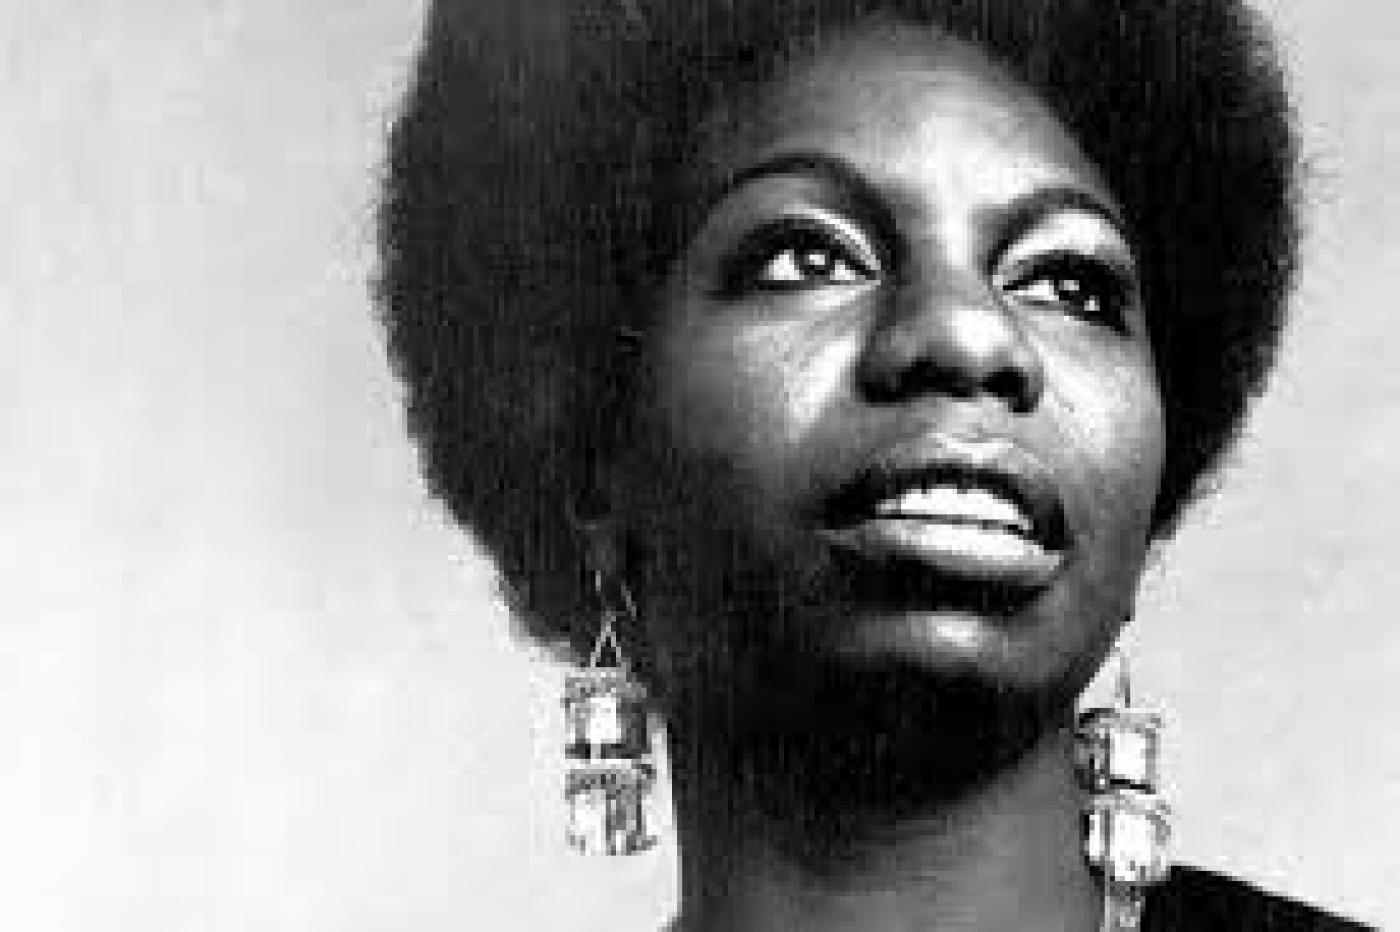 Nina Simone, em close up. #Pracegover